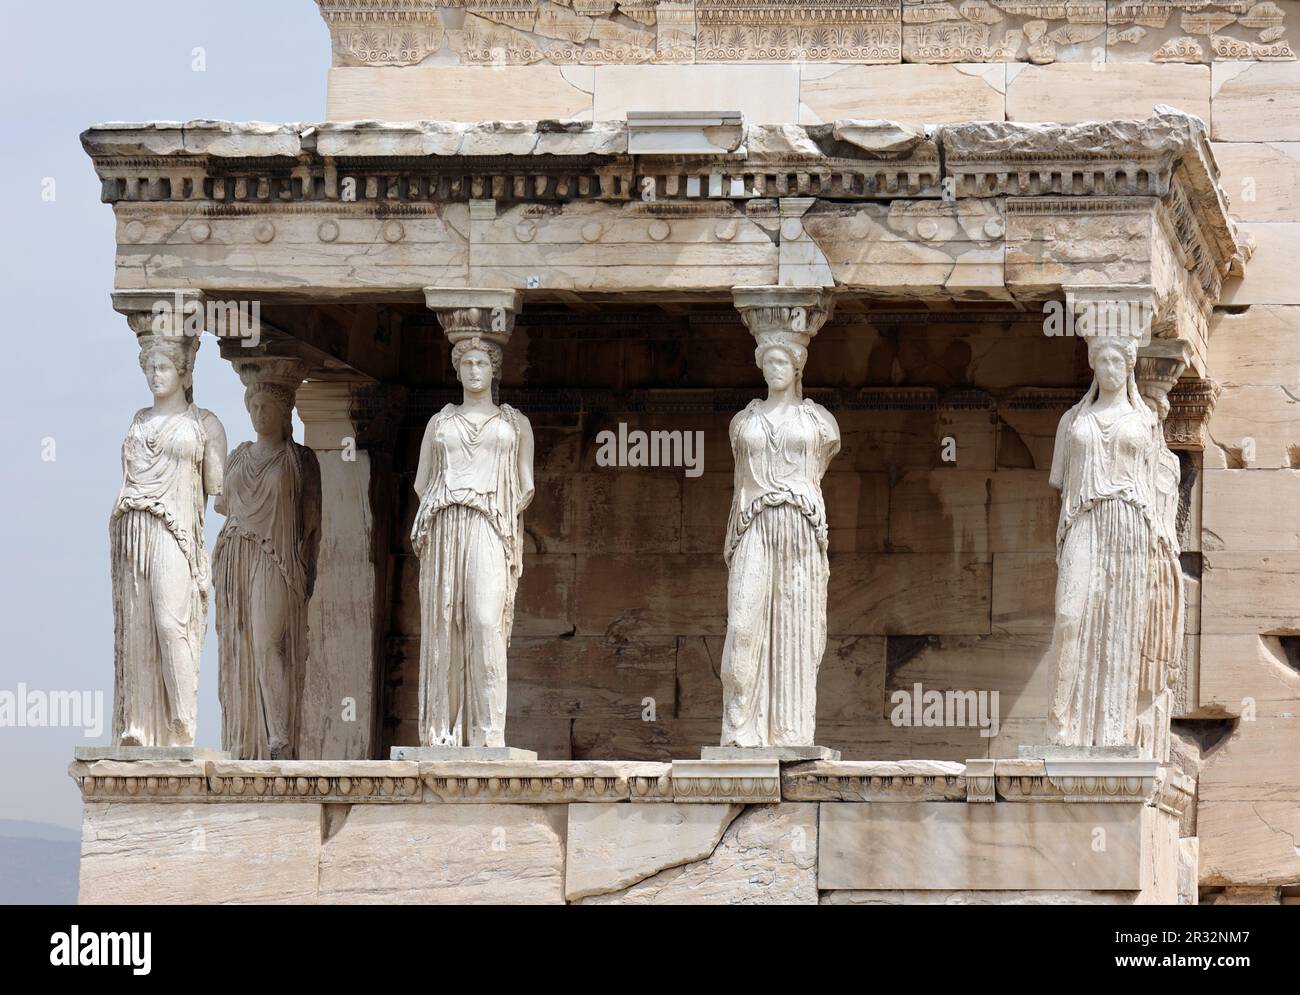 The Erechtheion temple (detail), the Acropolis, Athens, Greece Stock Photo